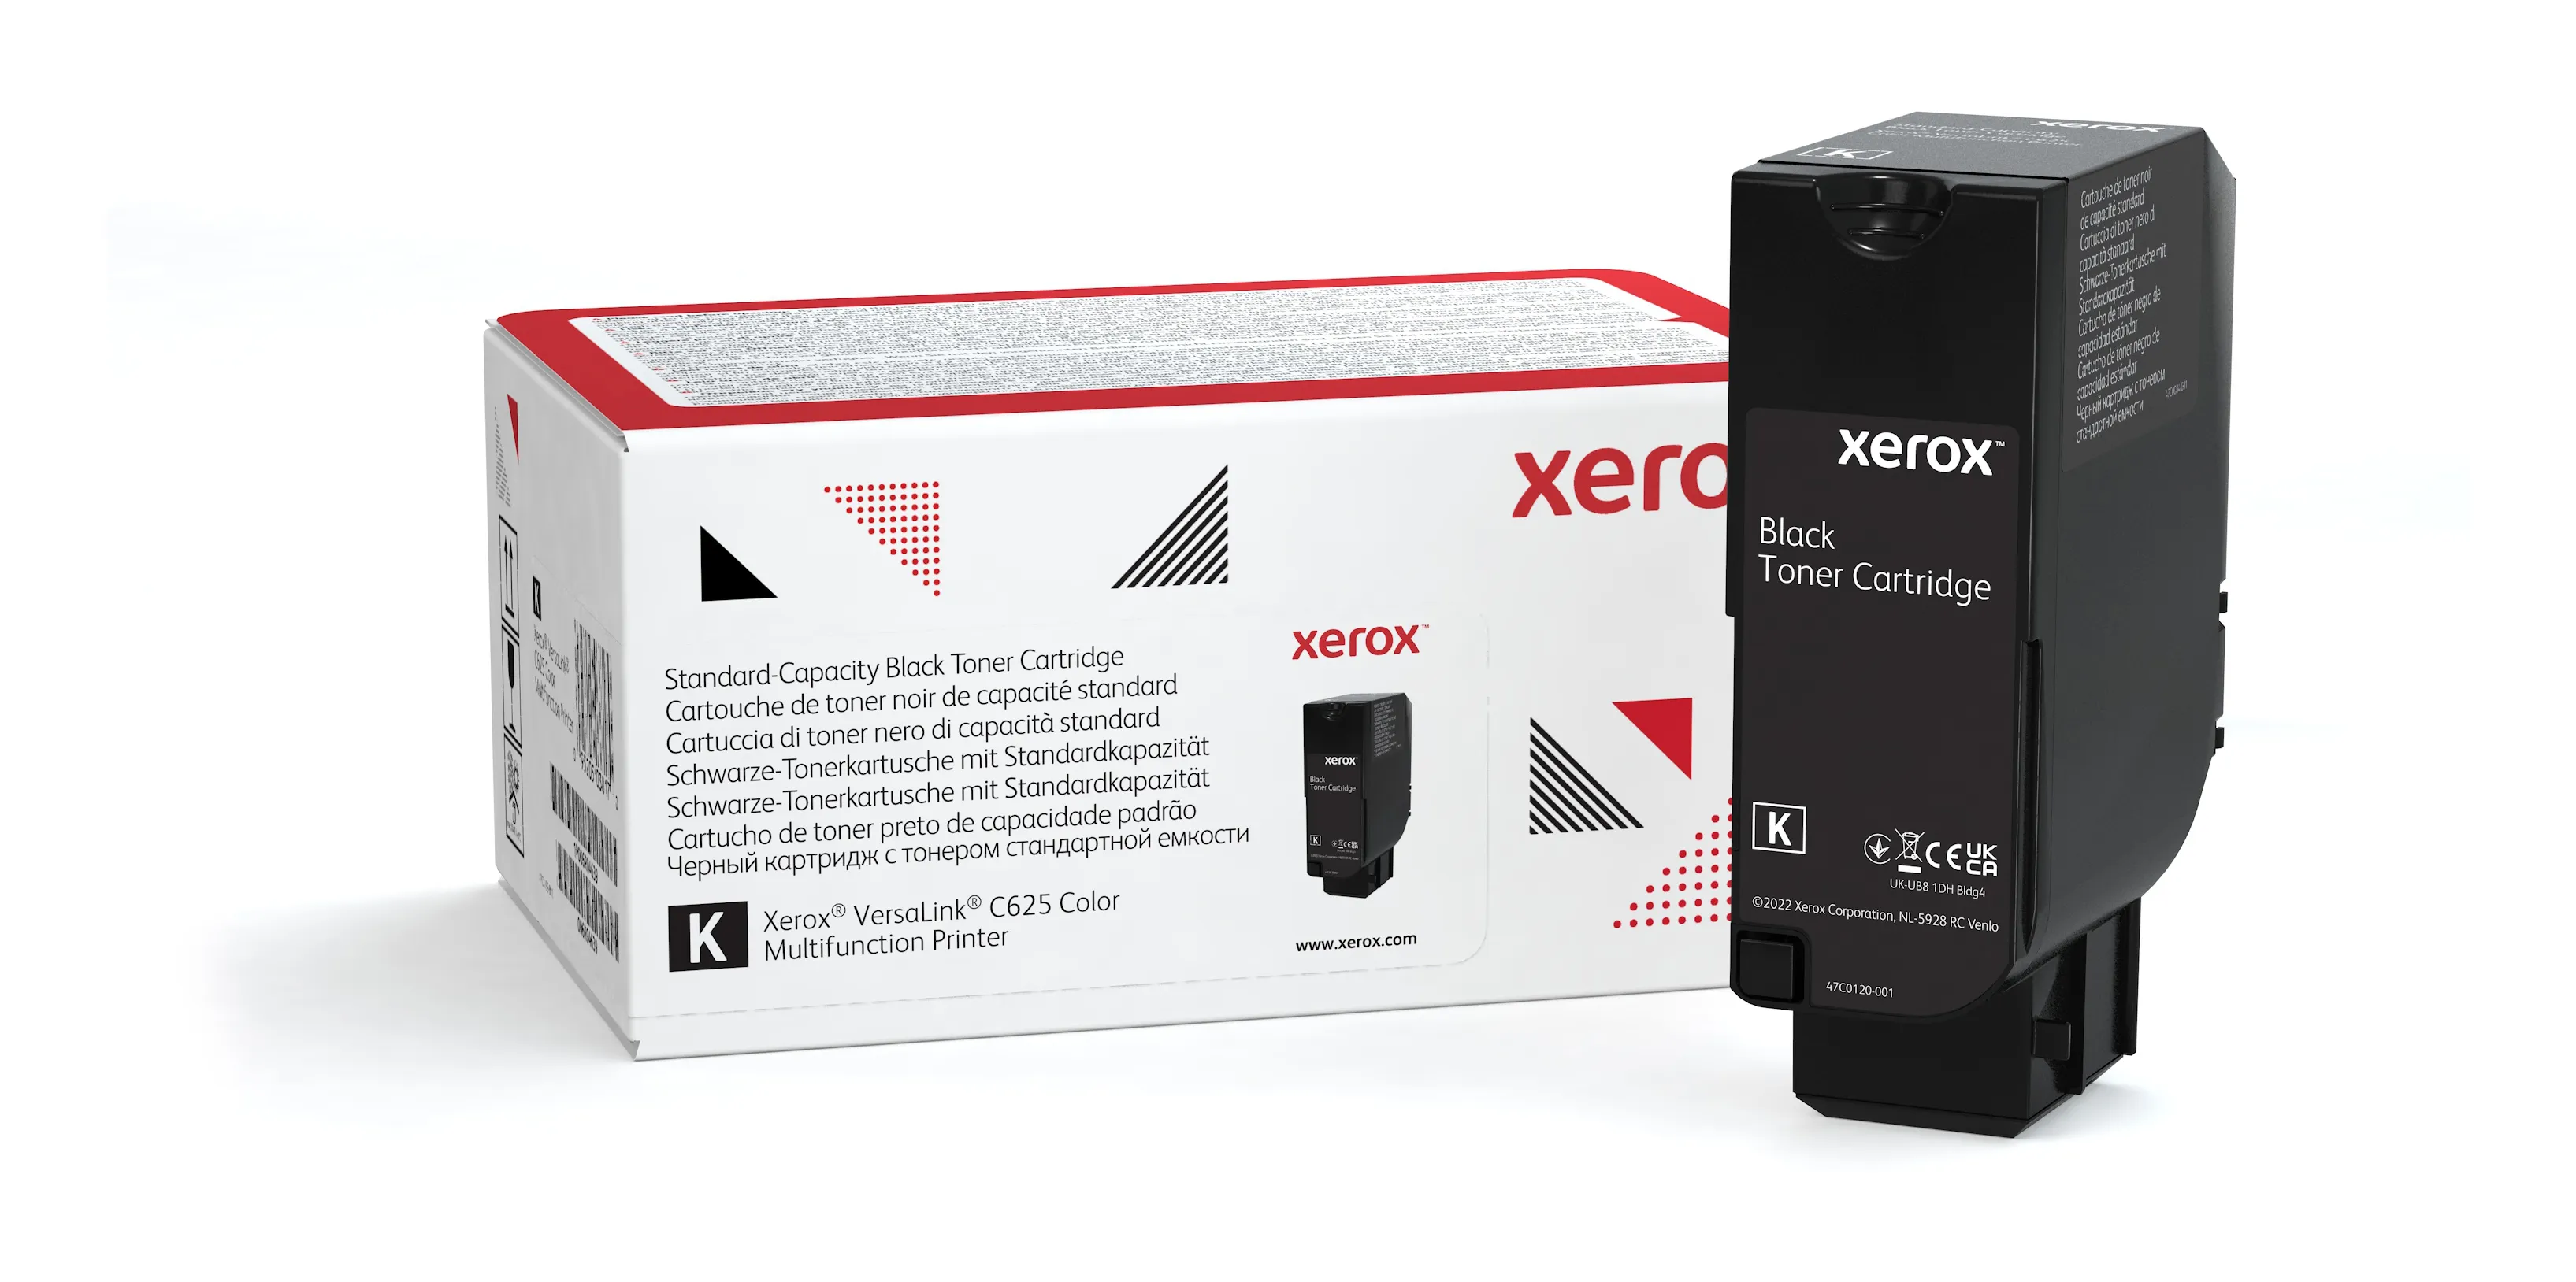 Achat Cartouche de toner Noir de Capacité standard Xerox au meilleur prix